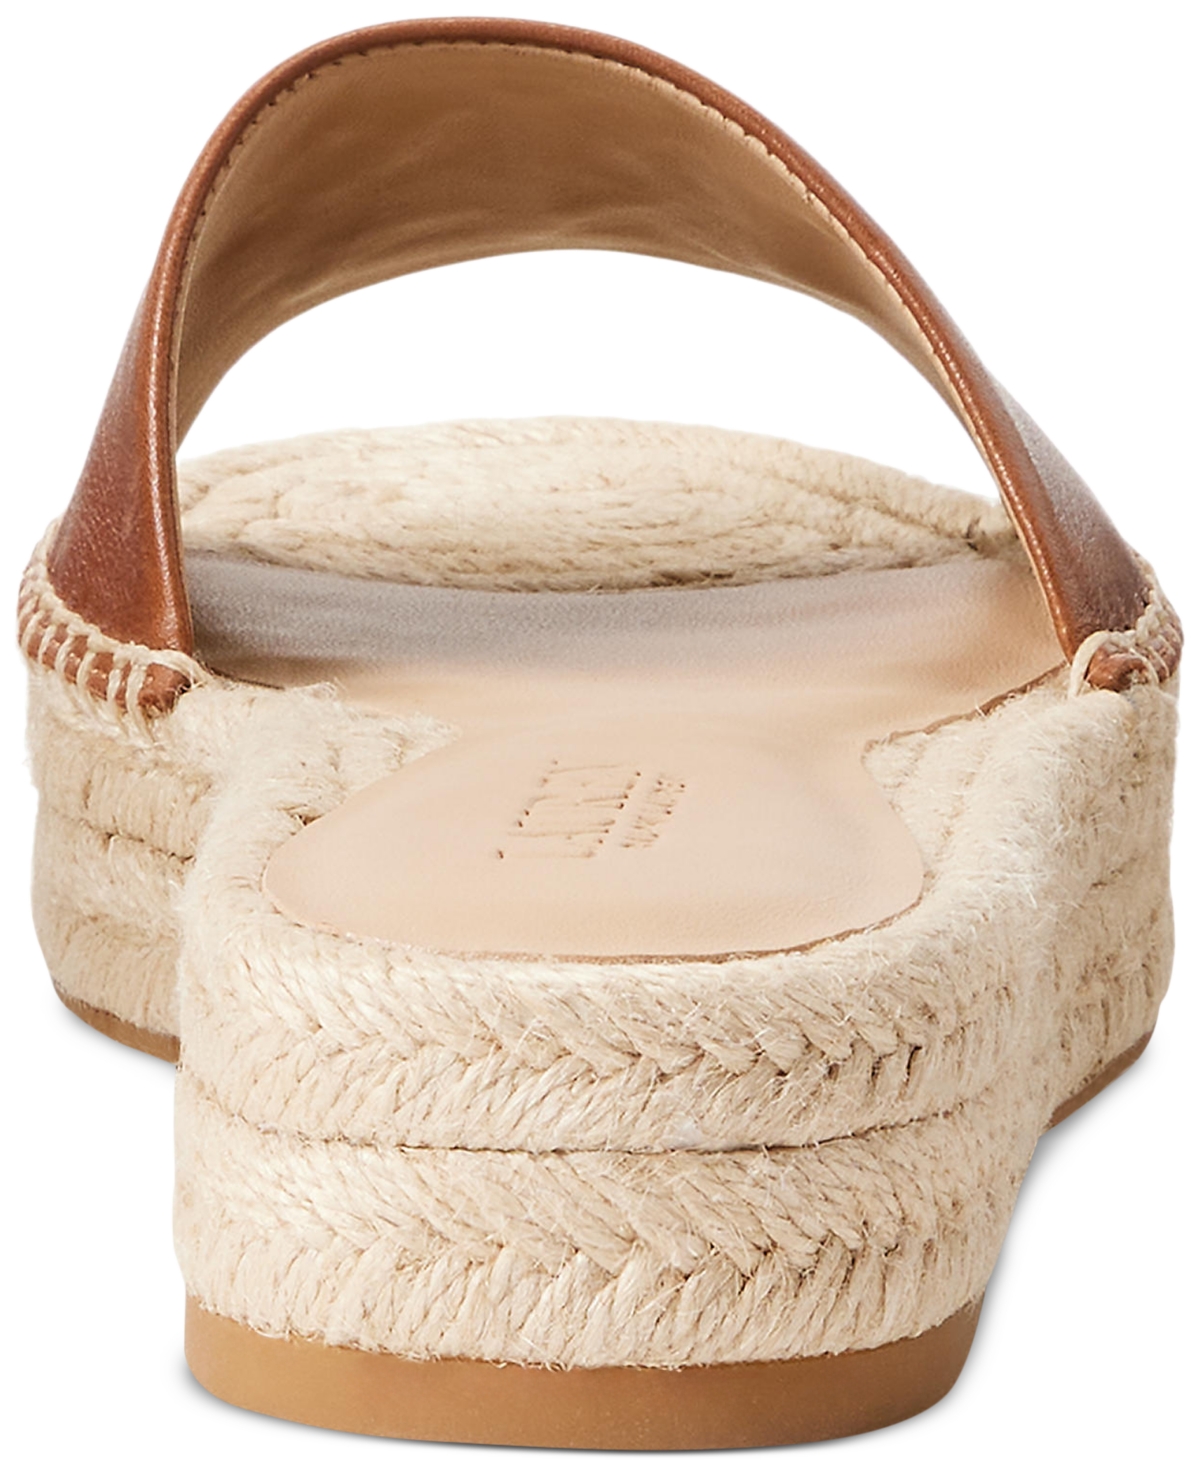 Shop Lauren Ralph Lauren Women's Polly Espadrille Flat Sandals In Deep Saddle Tan,cream